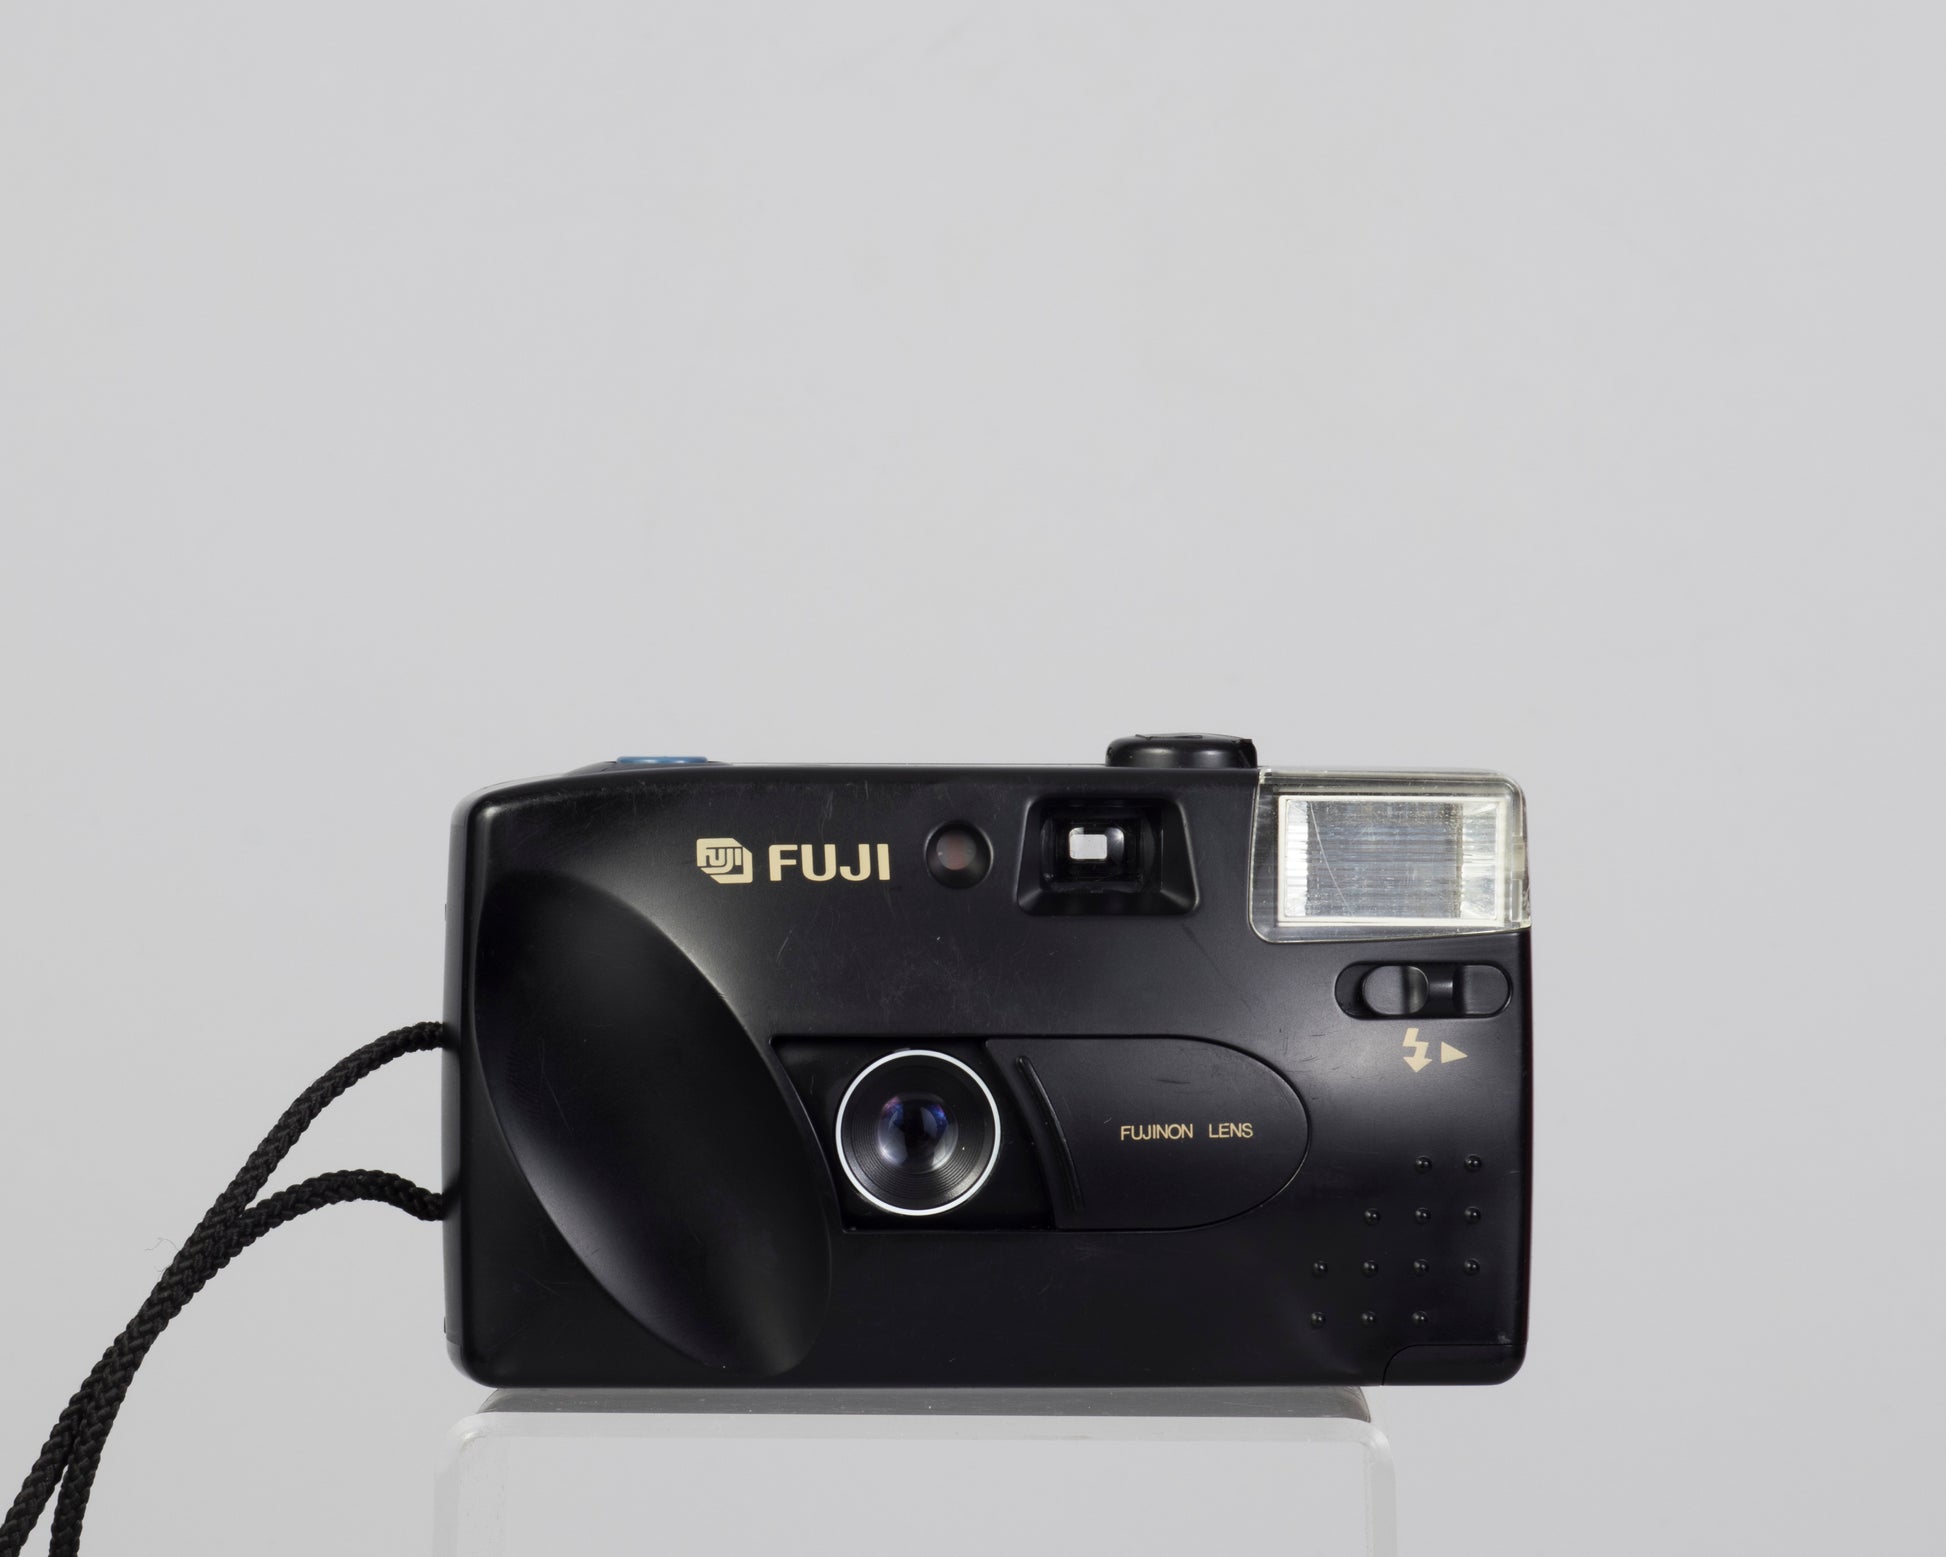 The Fujifilm DL-8 (aka DL-7) is a basic compact 35mm film camera